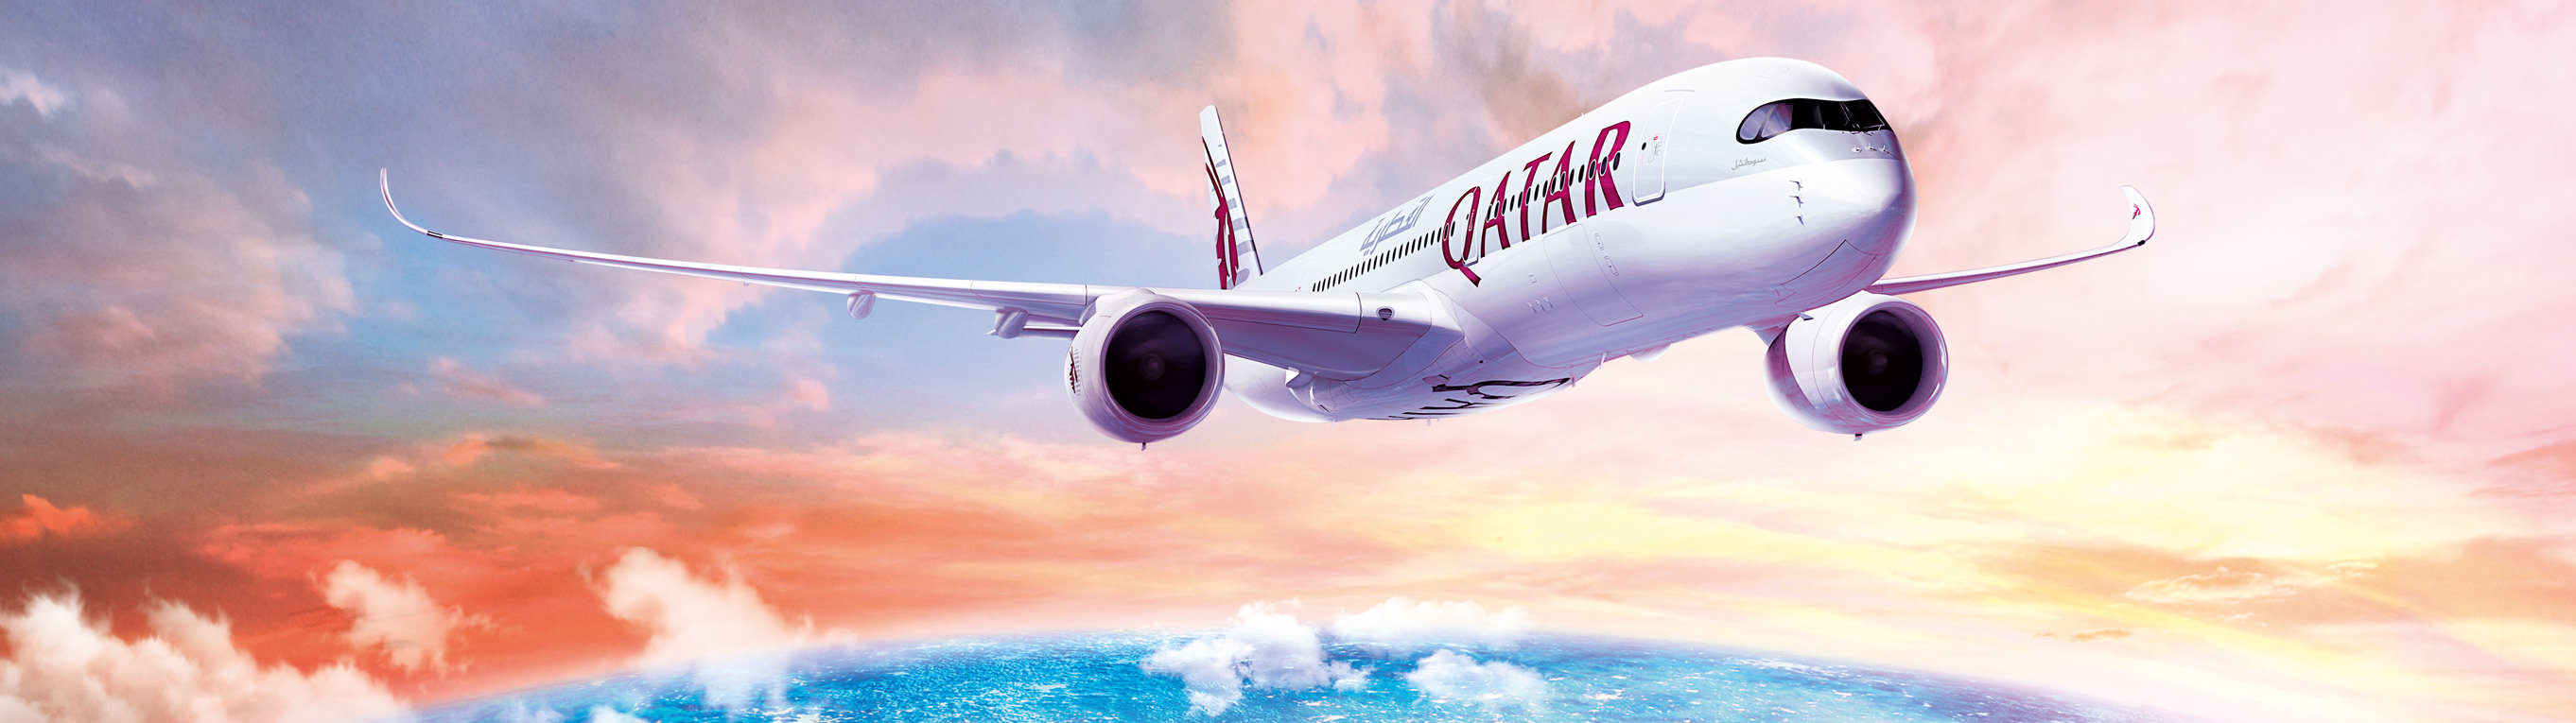 Рейсы Qatar Airways